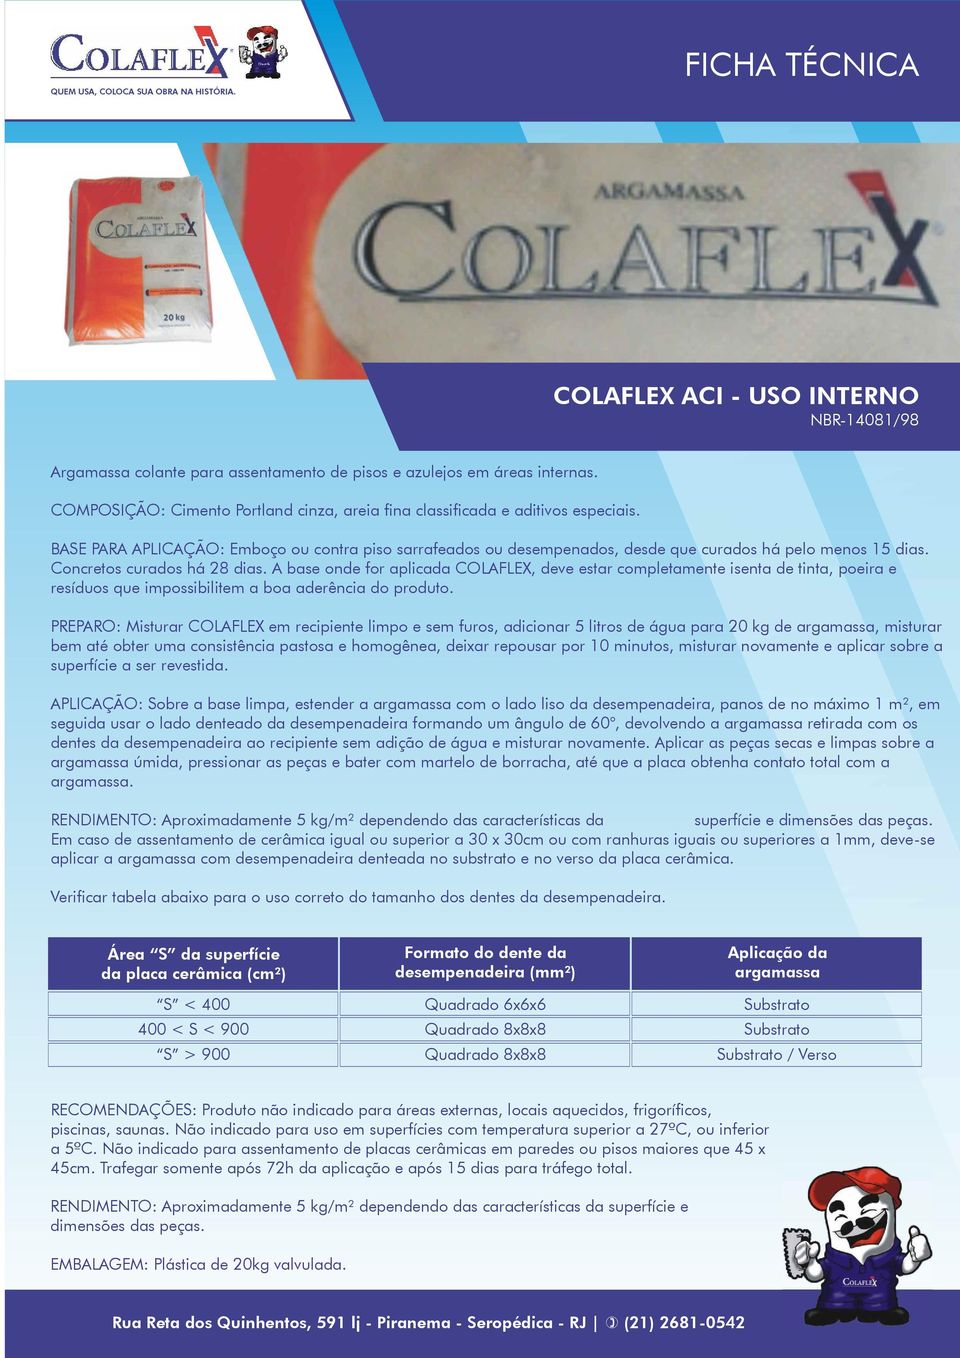 A base onde for aplicada COLAFLEX, deve estar completamente isenta de tinta, poeira e resíduos que impossibilitem a boa aderência do produto.